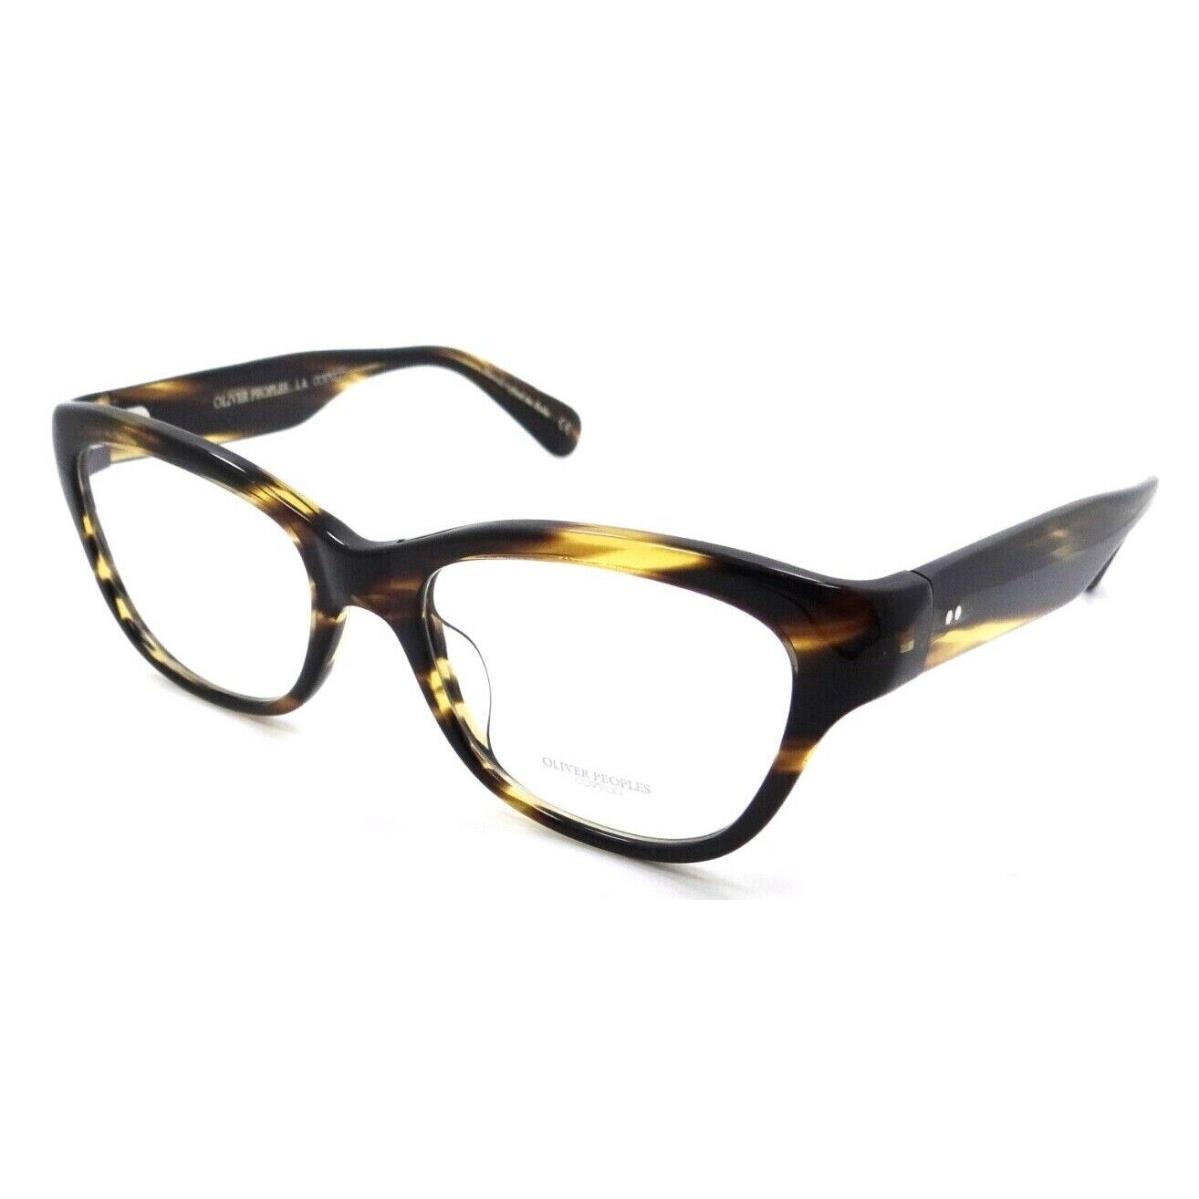 Oliver Peoples Eyeglasses Frames OV 5431U 1003 52-18-135 Siddie Cocobolo Italy - Multicolor Frame